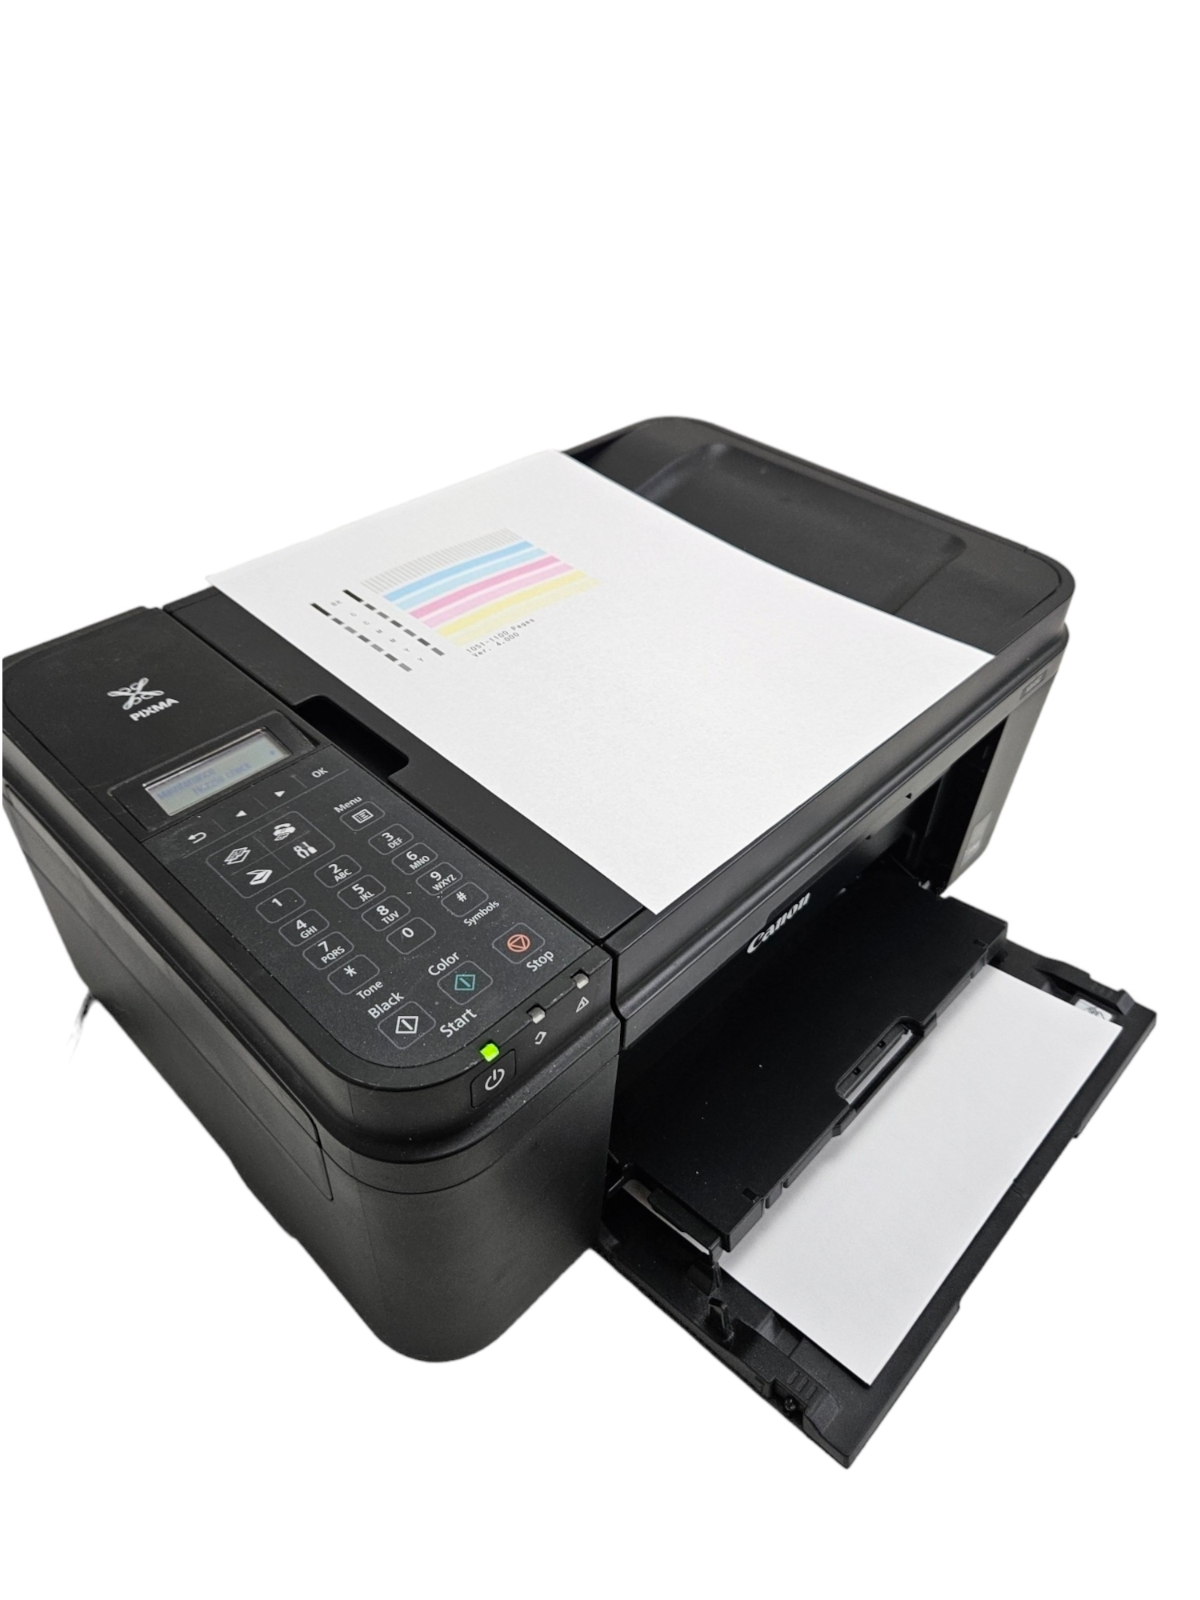 Canon Pixma MX490 MX492 Wireless Mobile All-In-One Printer Scanner Copier & Fax - $83.26